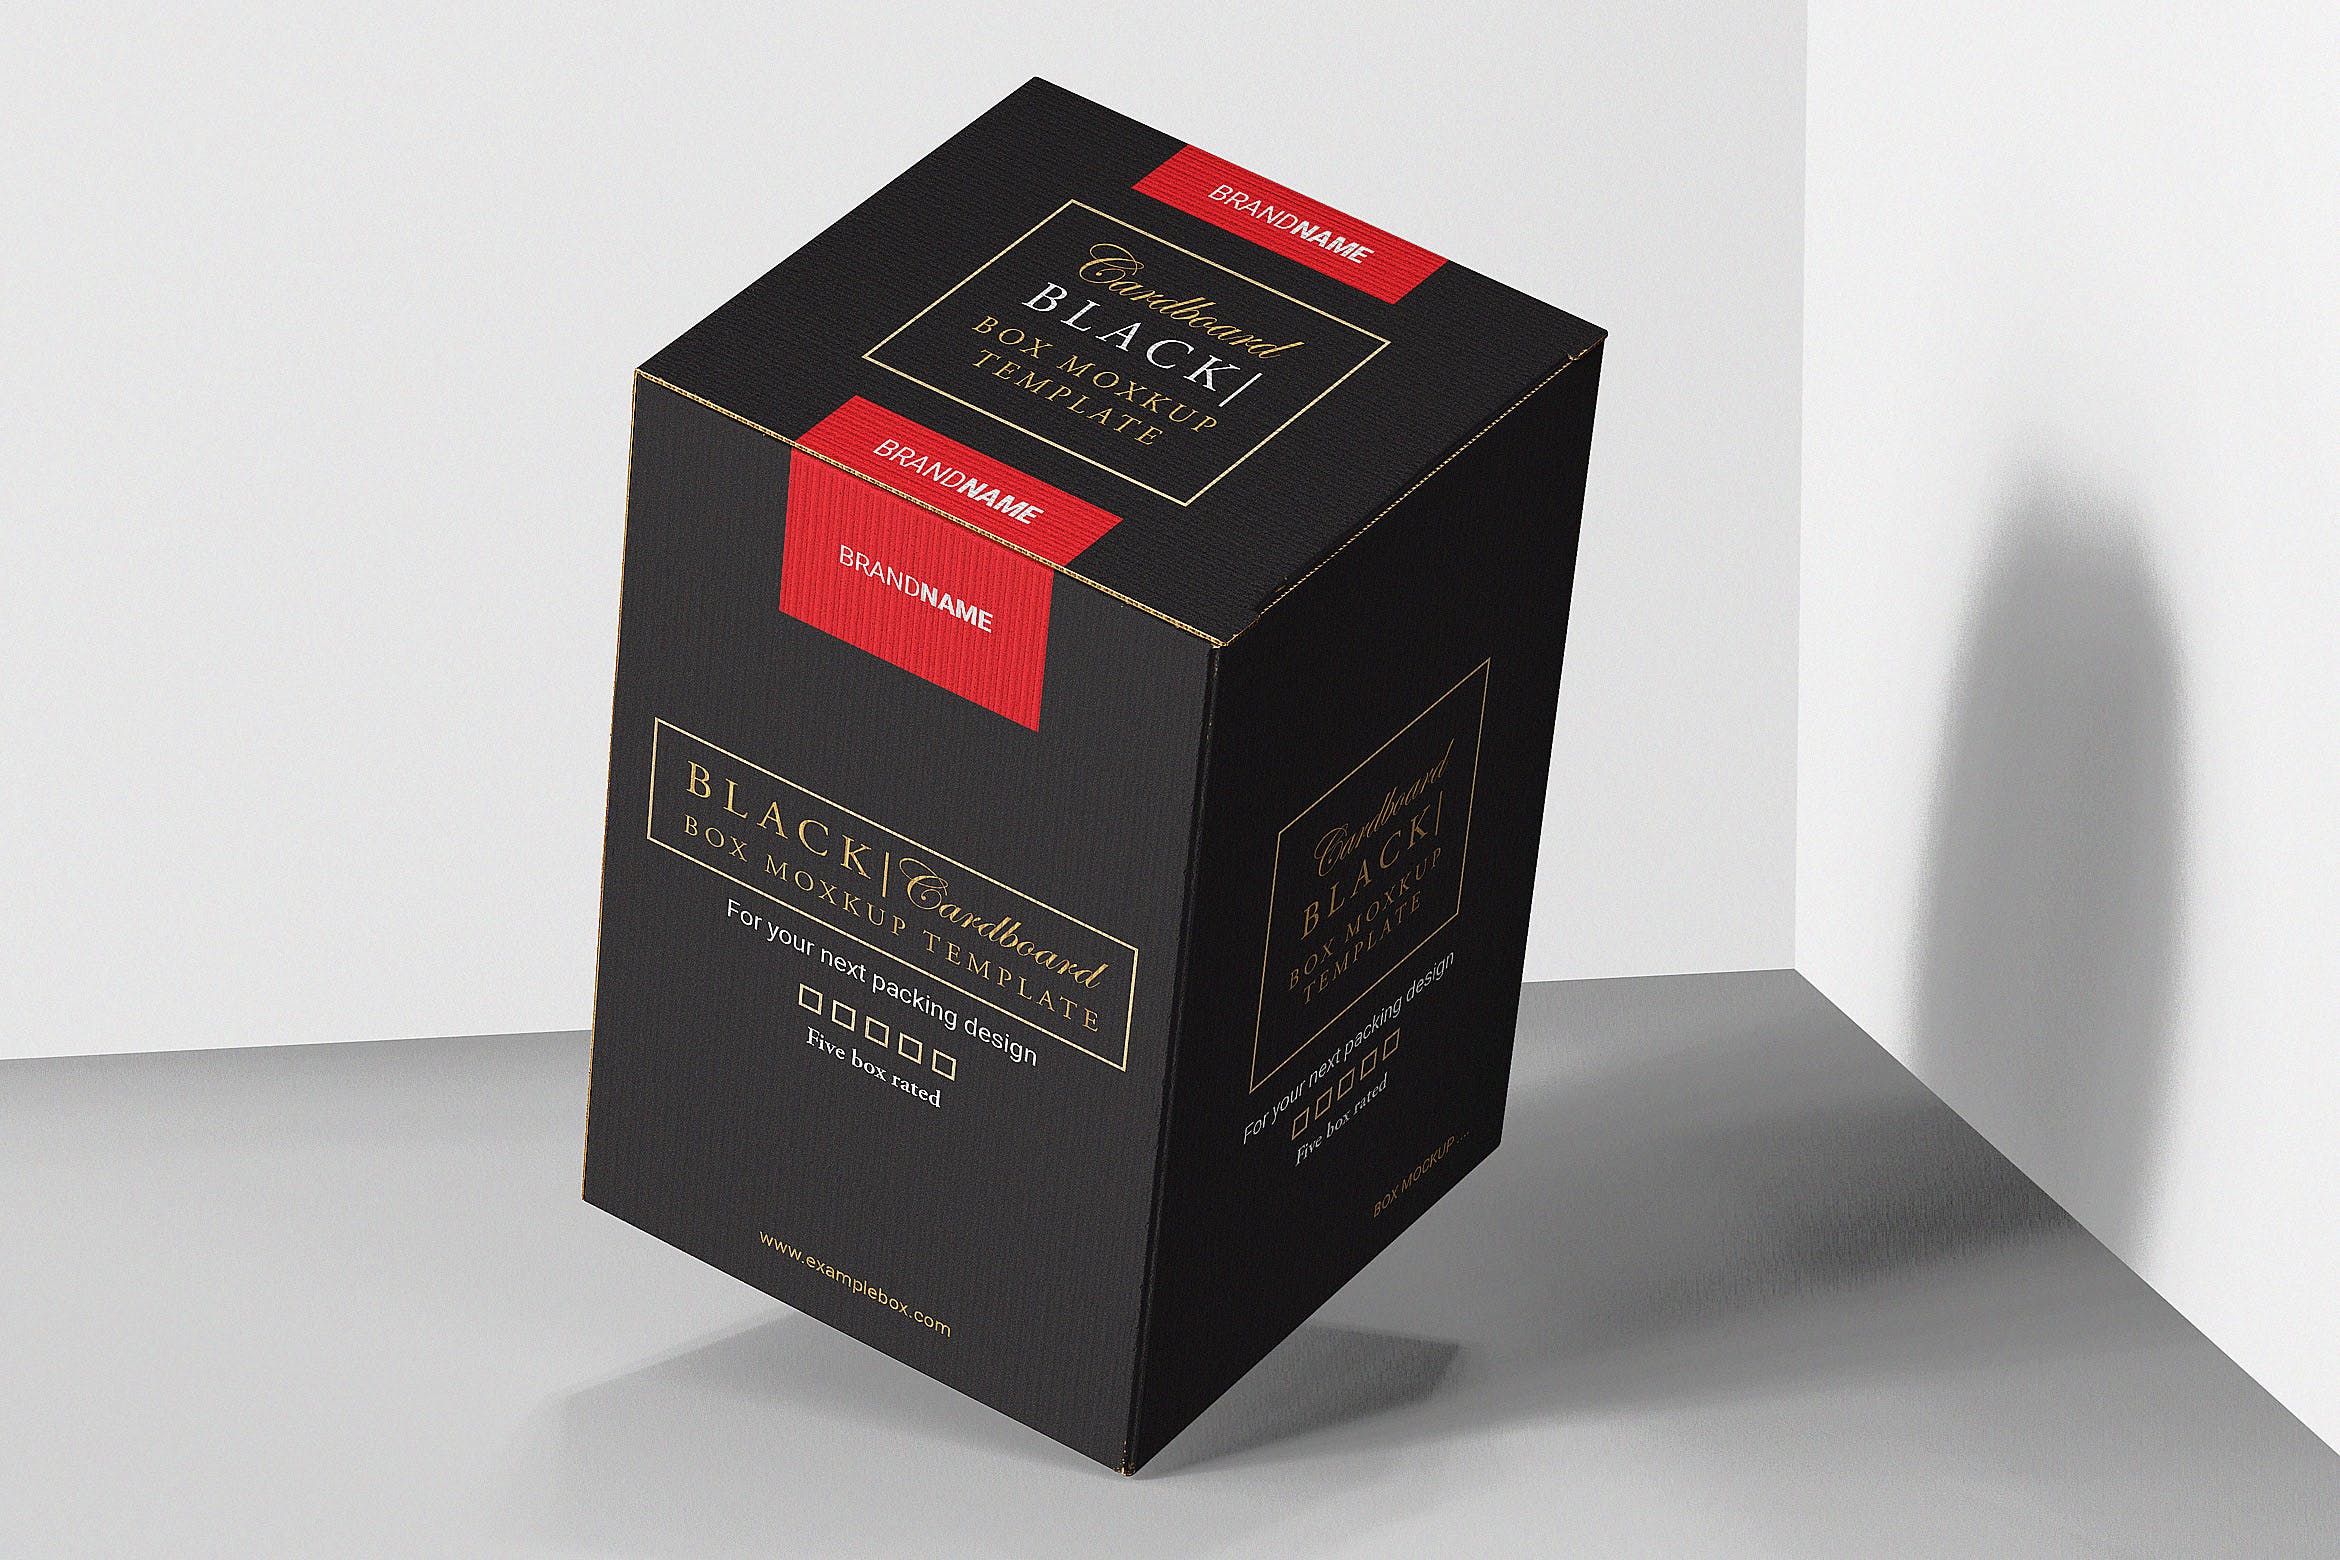 产品包装盒子设计效果图素材中国精选 Package Box Mock-up Template插图